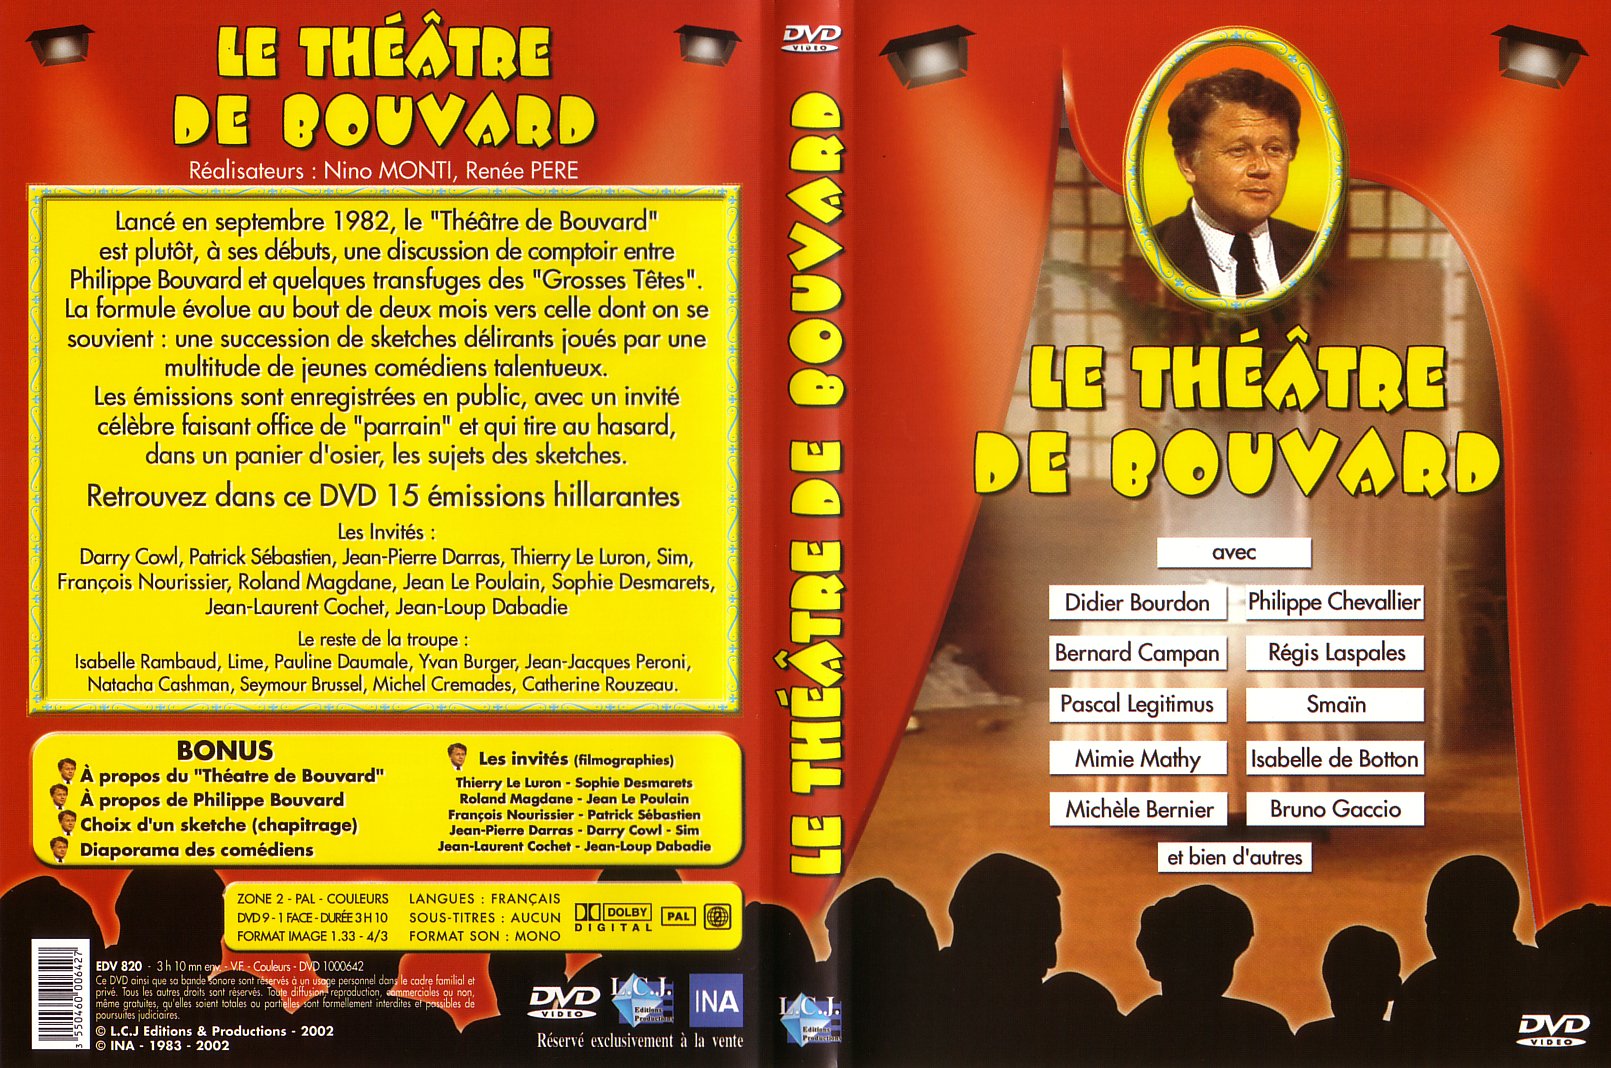 Jaquette DVD Le theatre de Bouvard